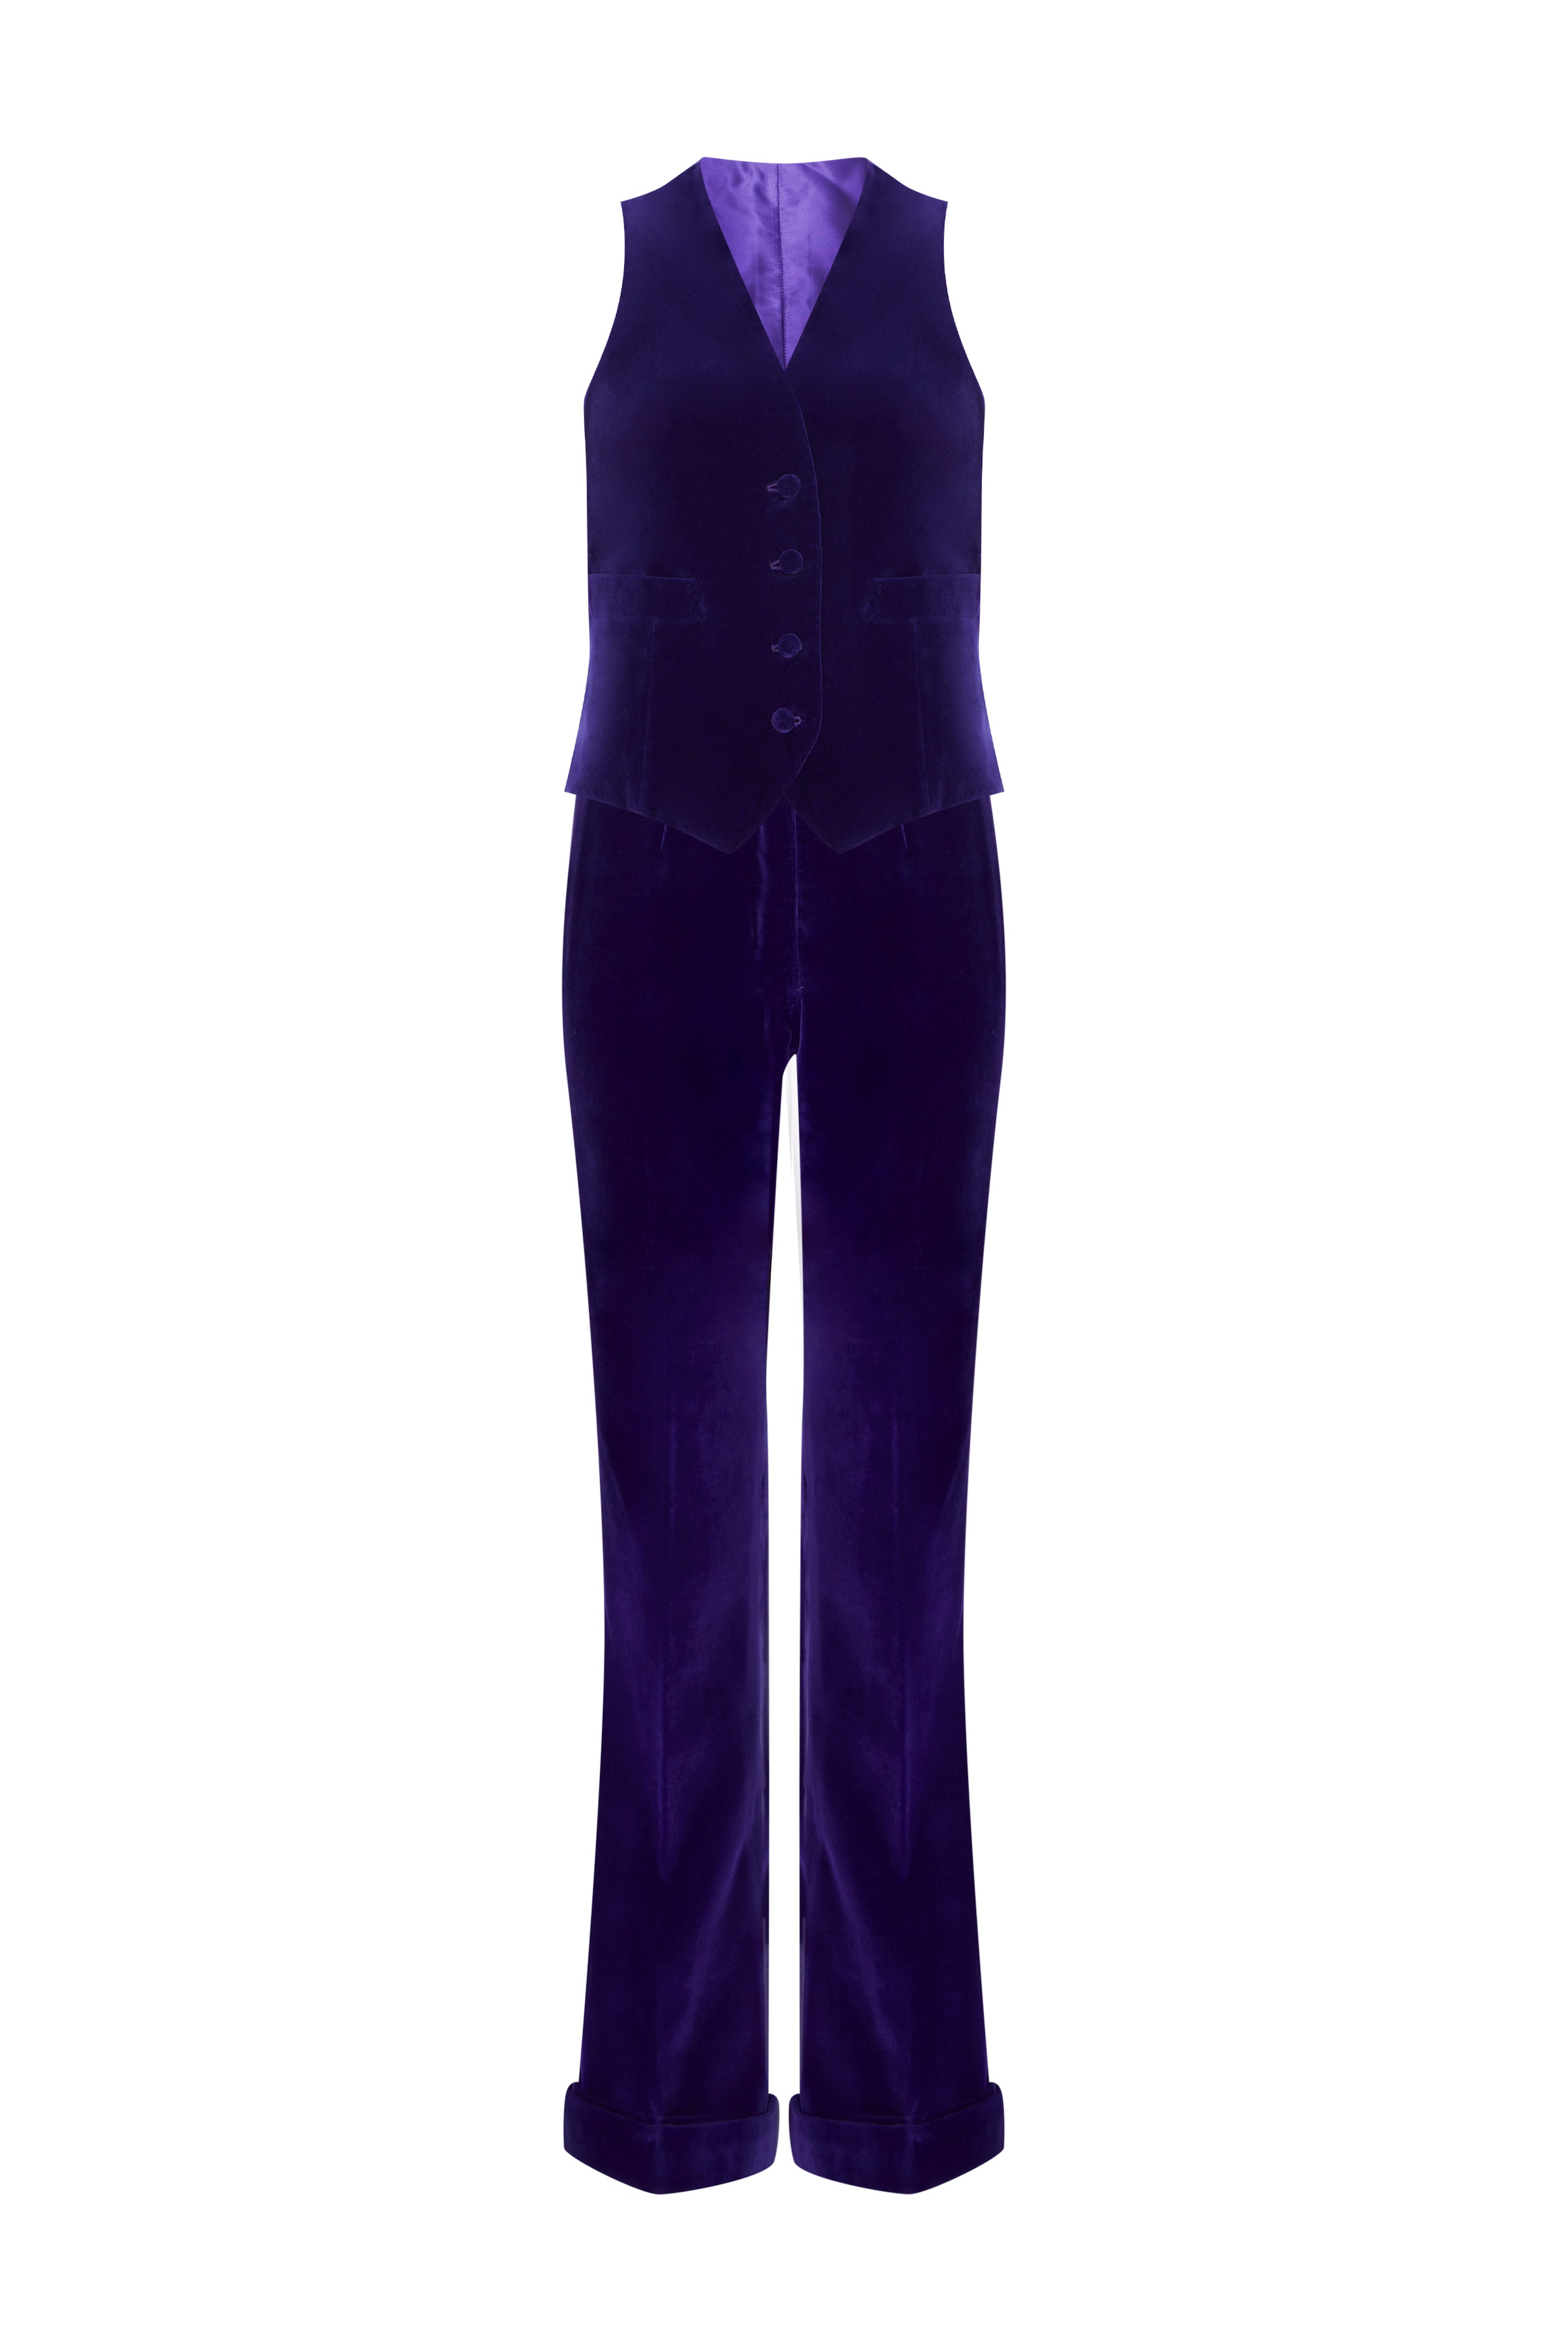 The Window Shop Regular Fit Girls Purple, Blue Trousers - Buy The Window  Shop Regular Fit Girls Purple, Blue Trousers Online at Best Prices in India  | Flipkart.com